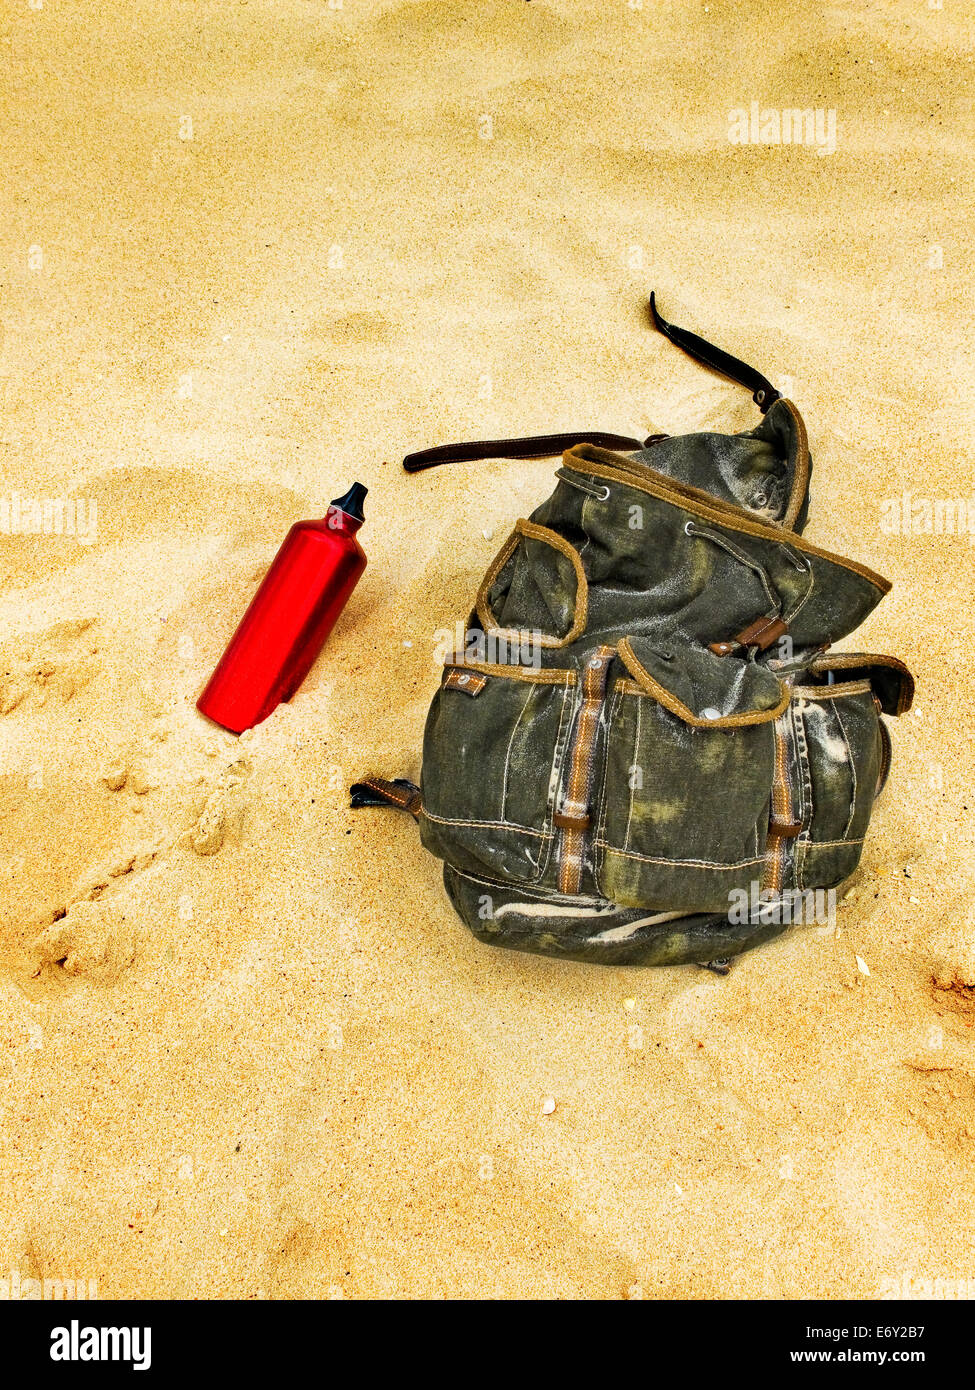 Sac à dos et gourde bouteille d'eau dans le sable d'une plage. Voyageurs en sac à dos en faisant une pause. Banque D'Images